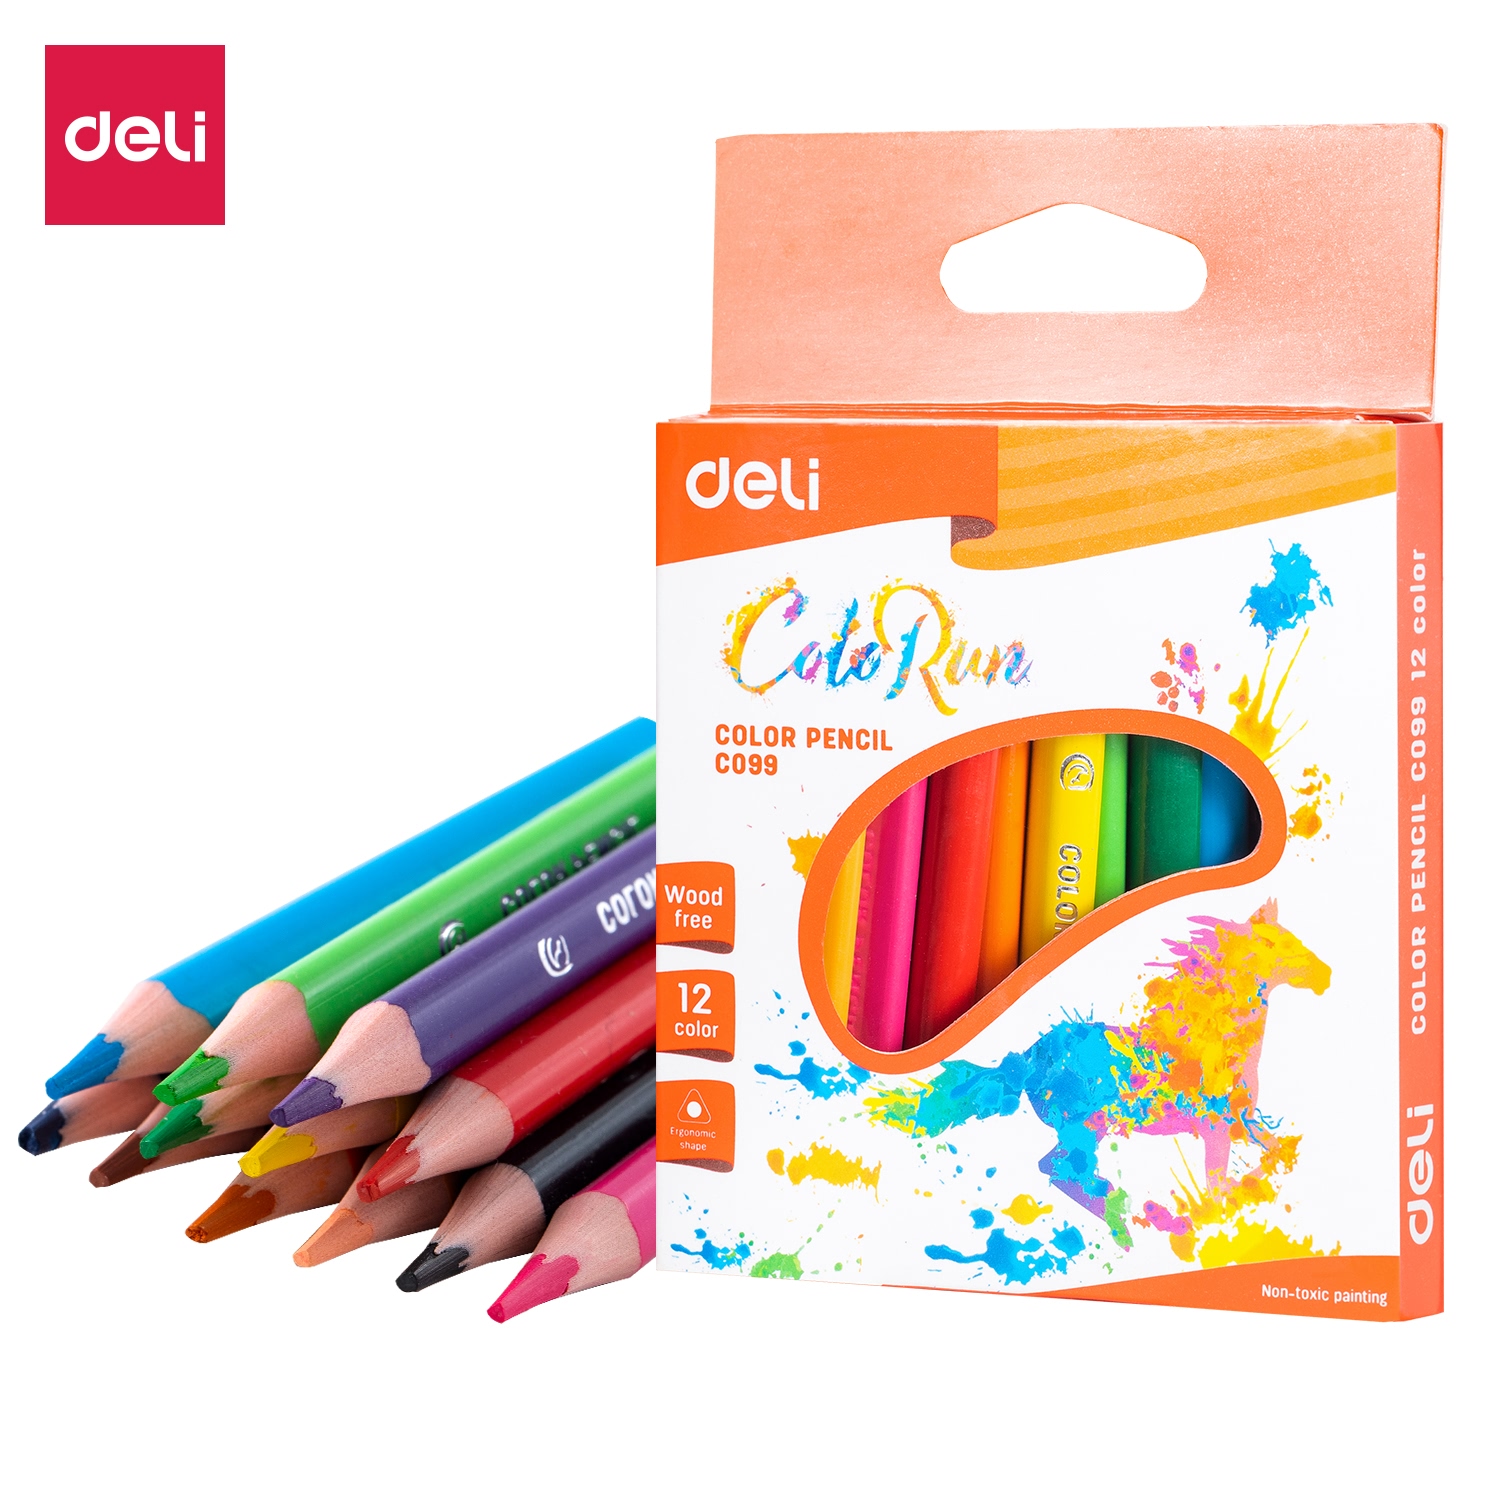 Deli-EC09900 Colored Pencil